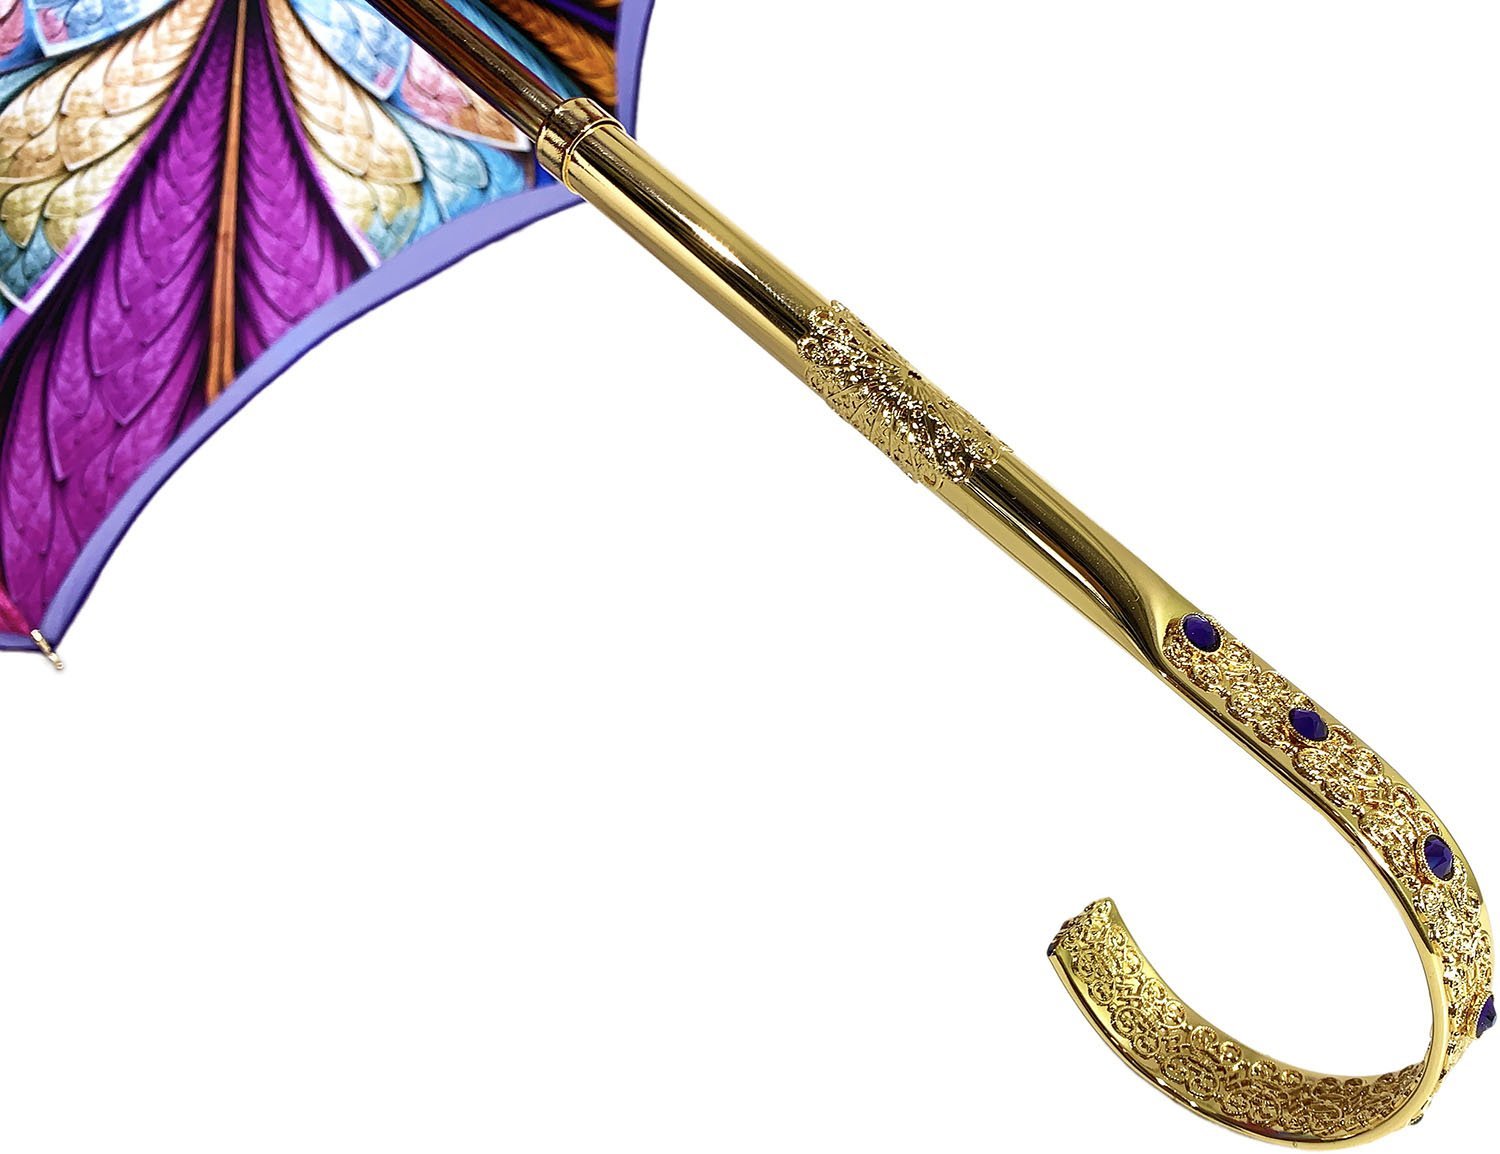 Fantastic Double Canopy Luxury purple Umbrella - il-marchesato